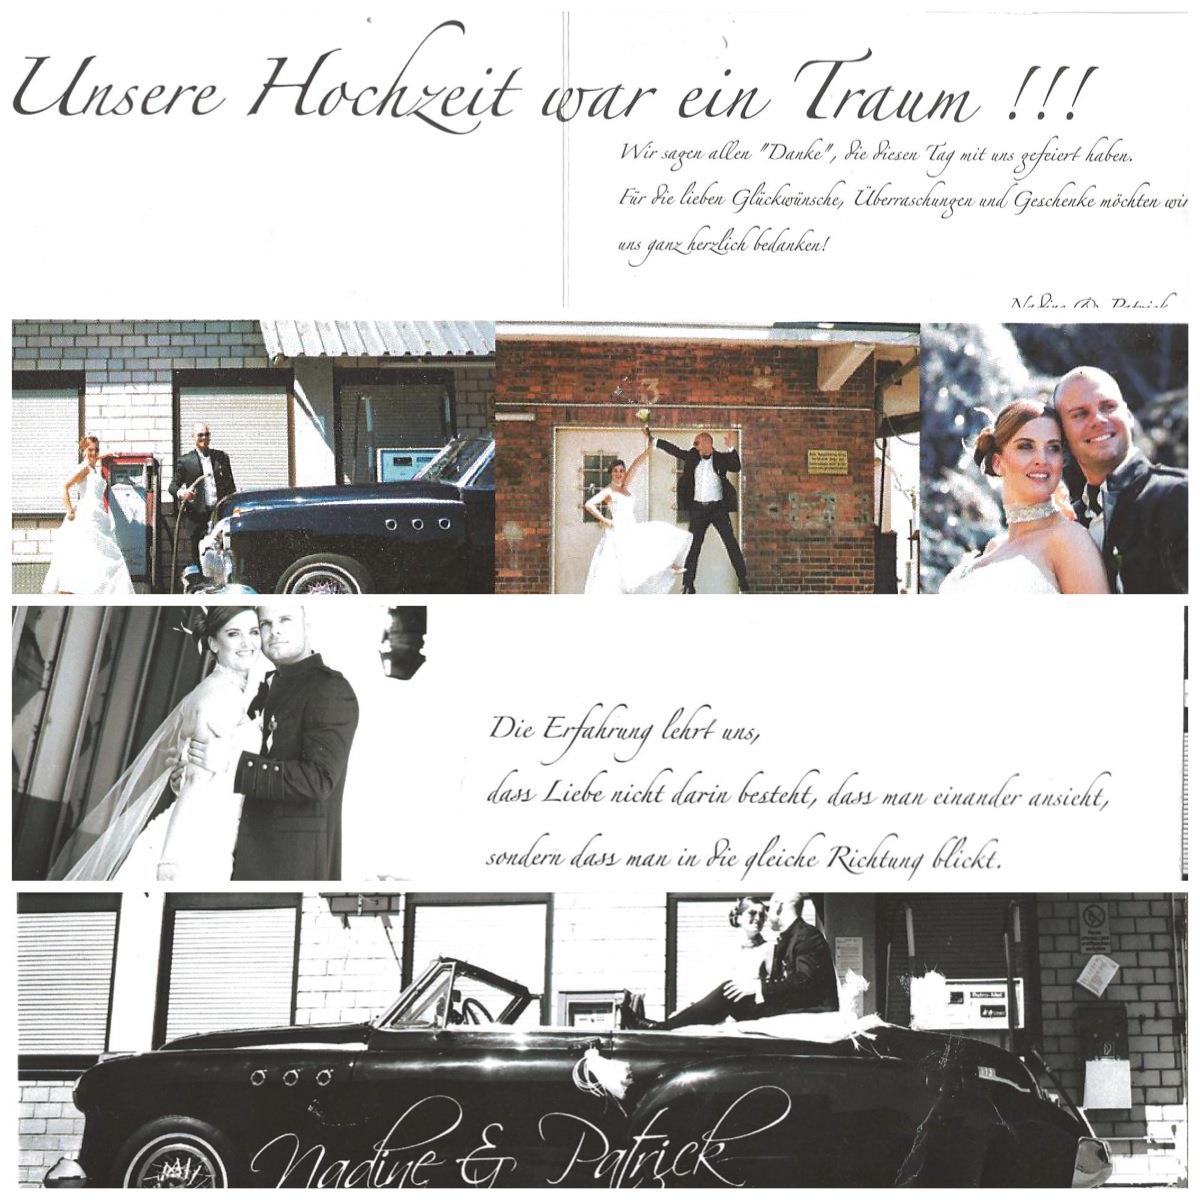 Gutsschänke Hühnerhof - Hochzeit Nadine & Patrick